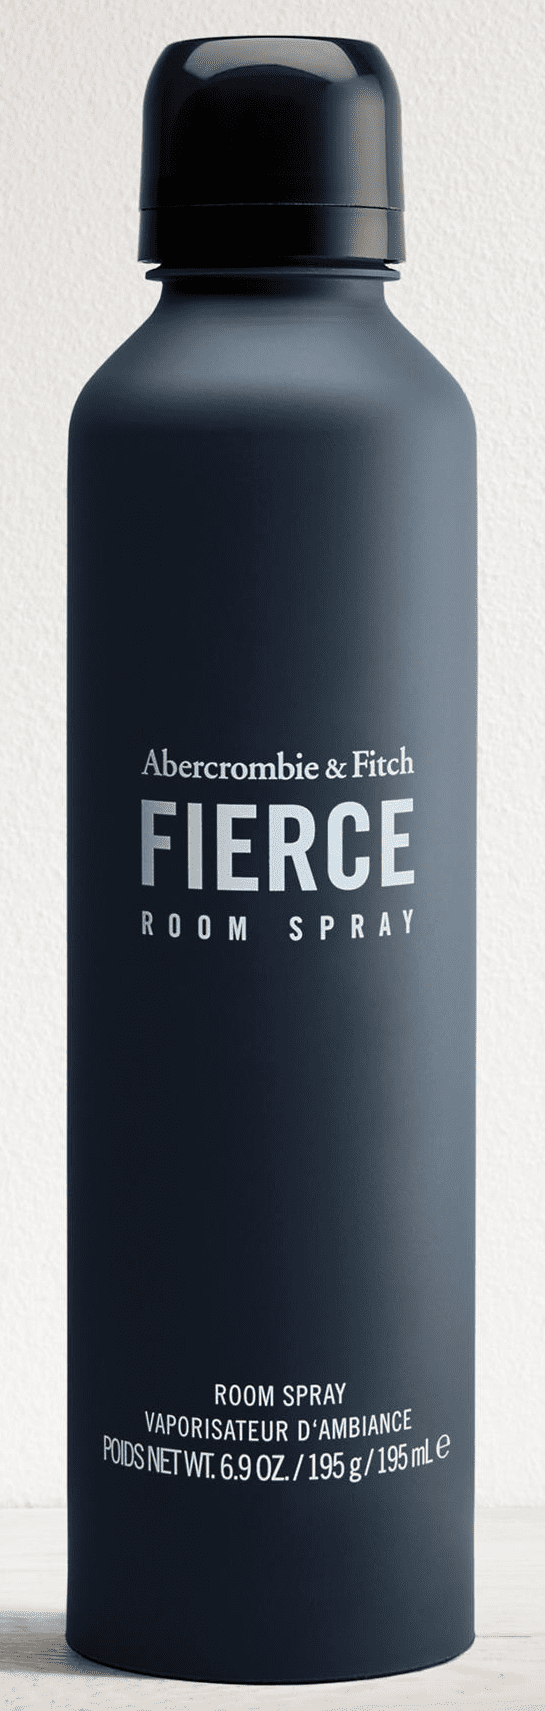 Abercrombie \u0026 Fitch Fierce Room Spray 